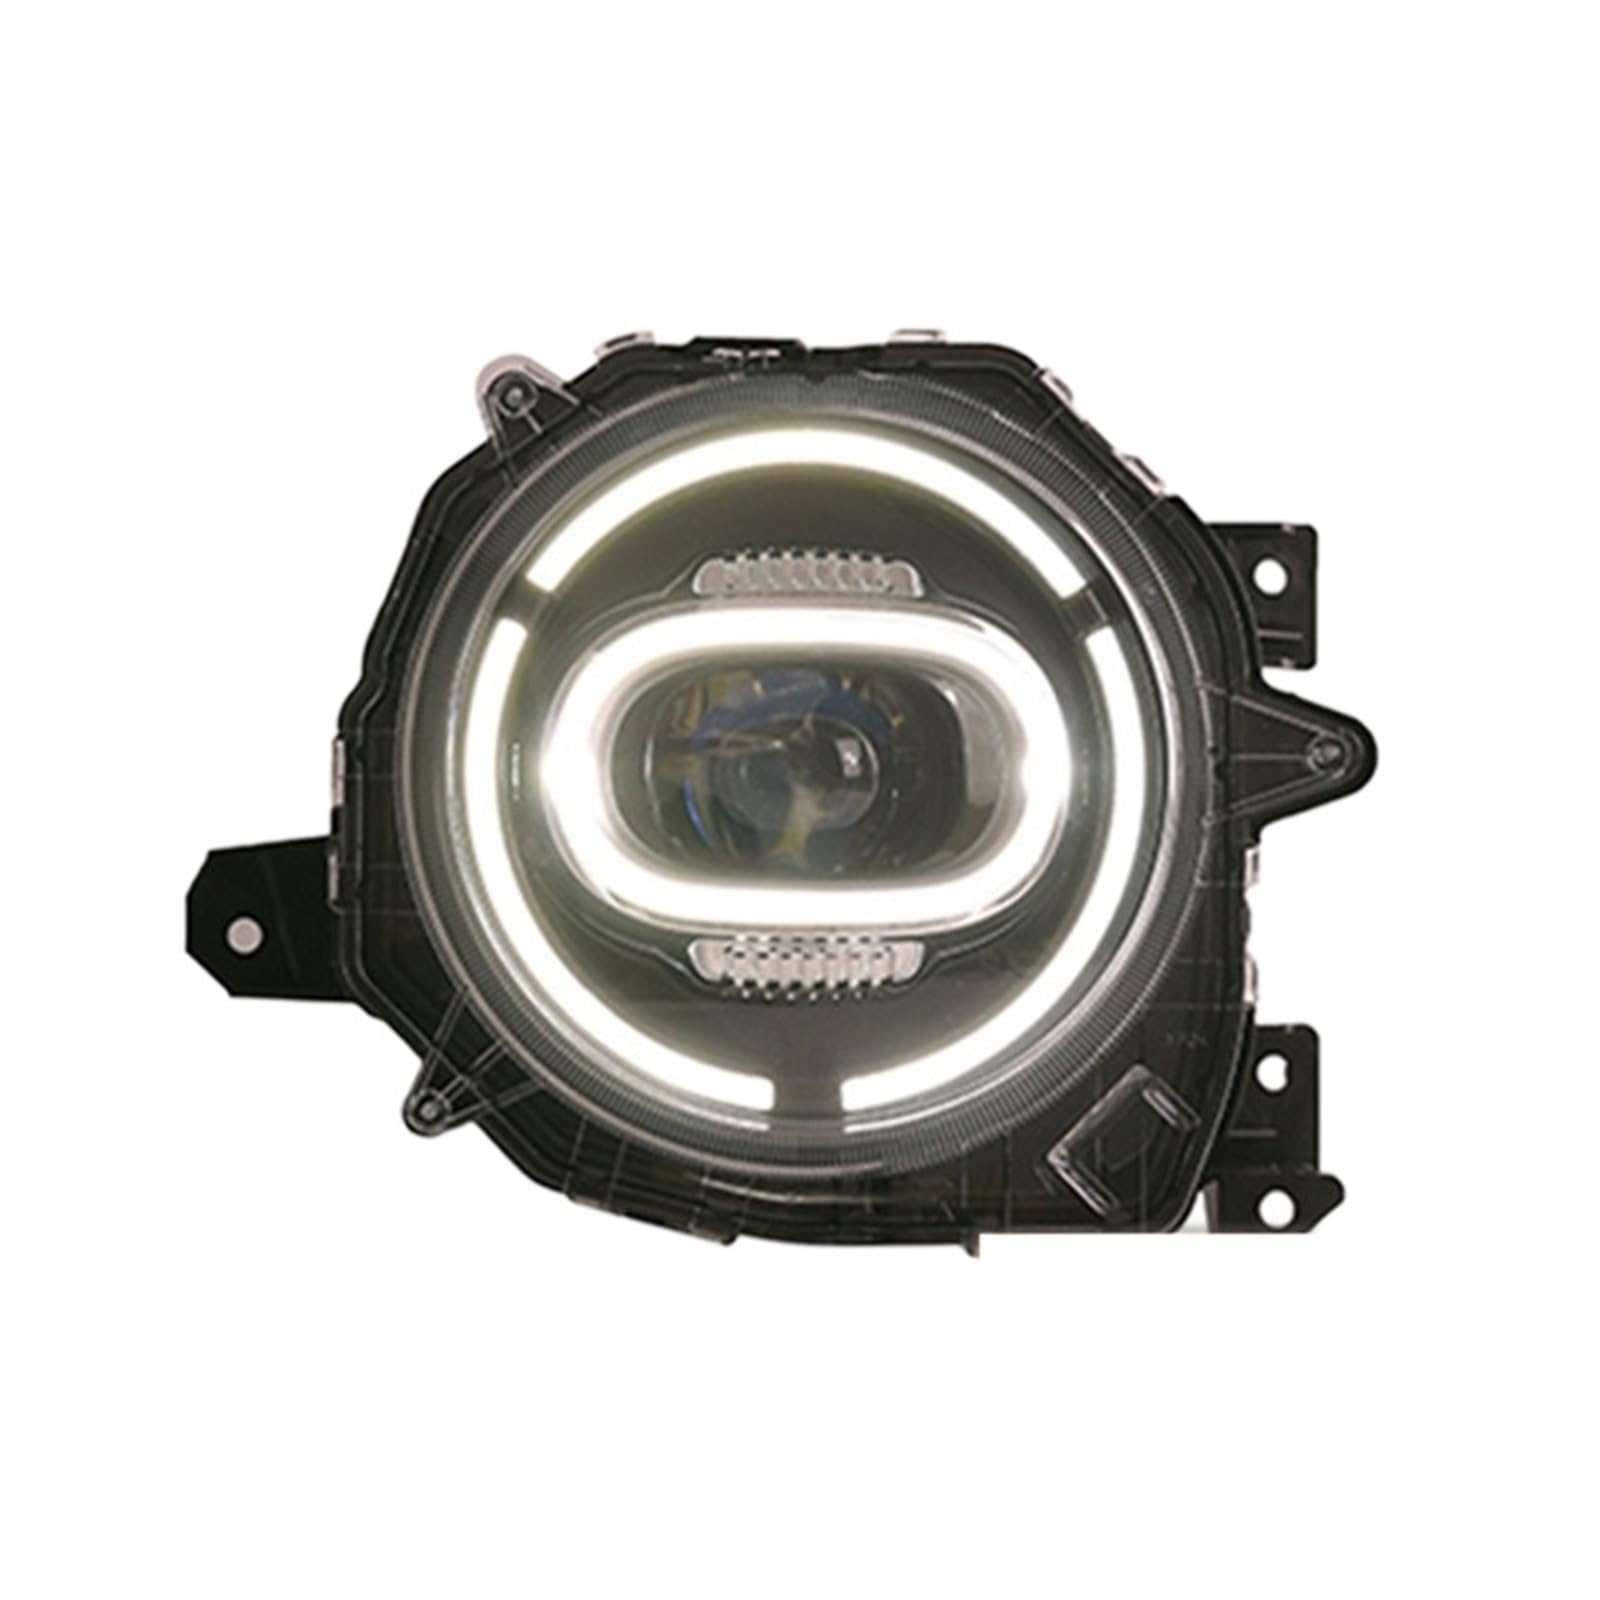 LIINYTG Auto Zubehör Kompatibel for Suzuki Jimny Scheinwerfer LED 2018-2020 Jimny Kopf Licht LED DRL Blinker Fernlicht projektor Objektiv von LIINYTG